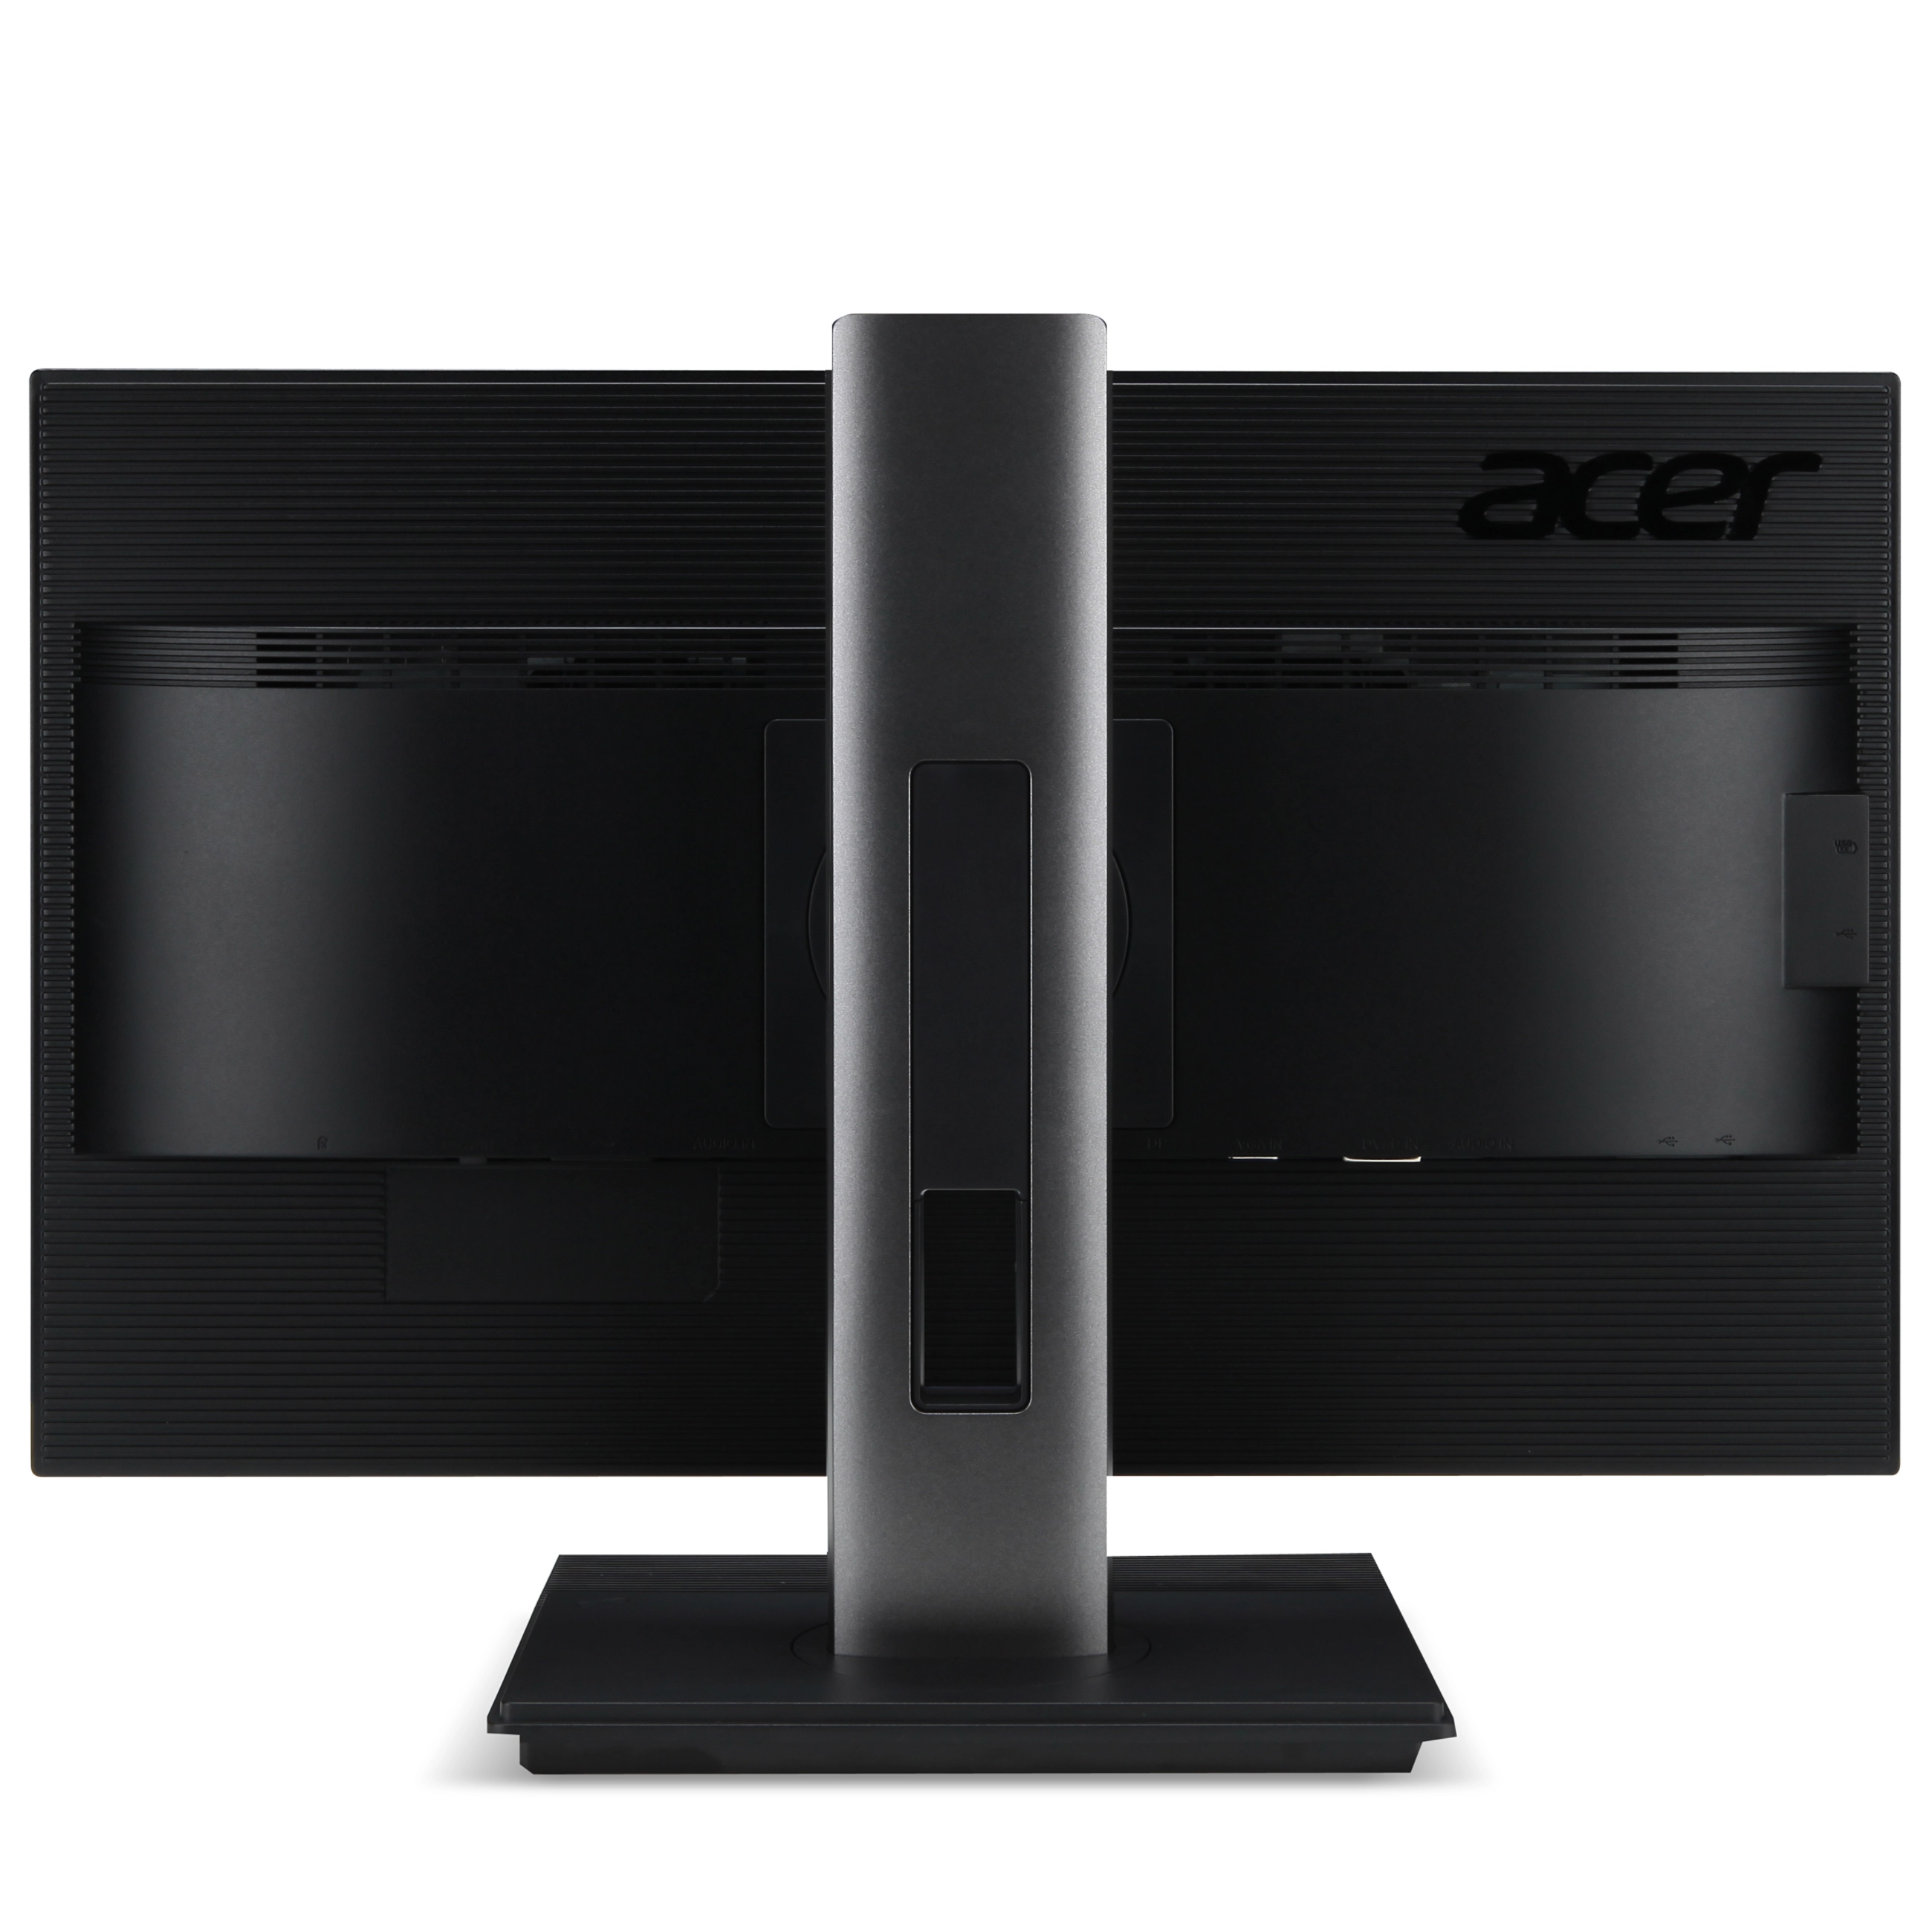 Acer B246HLymdr - 1920 x 1080 - FHD - 24,0 Zoll - 5 ms - Schwarz